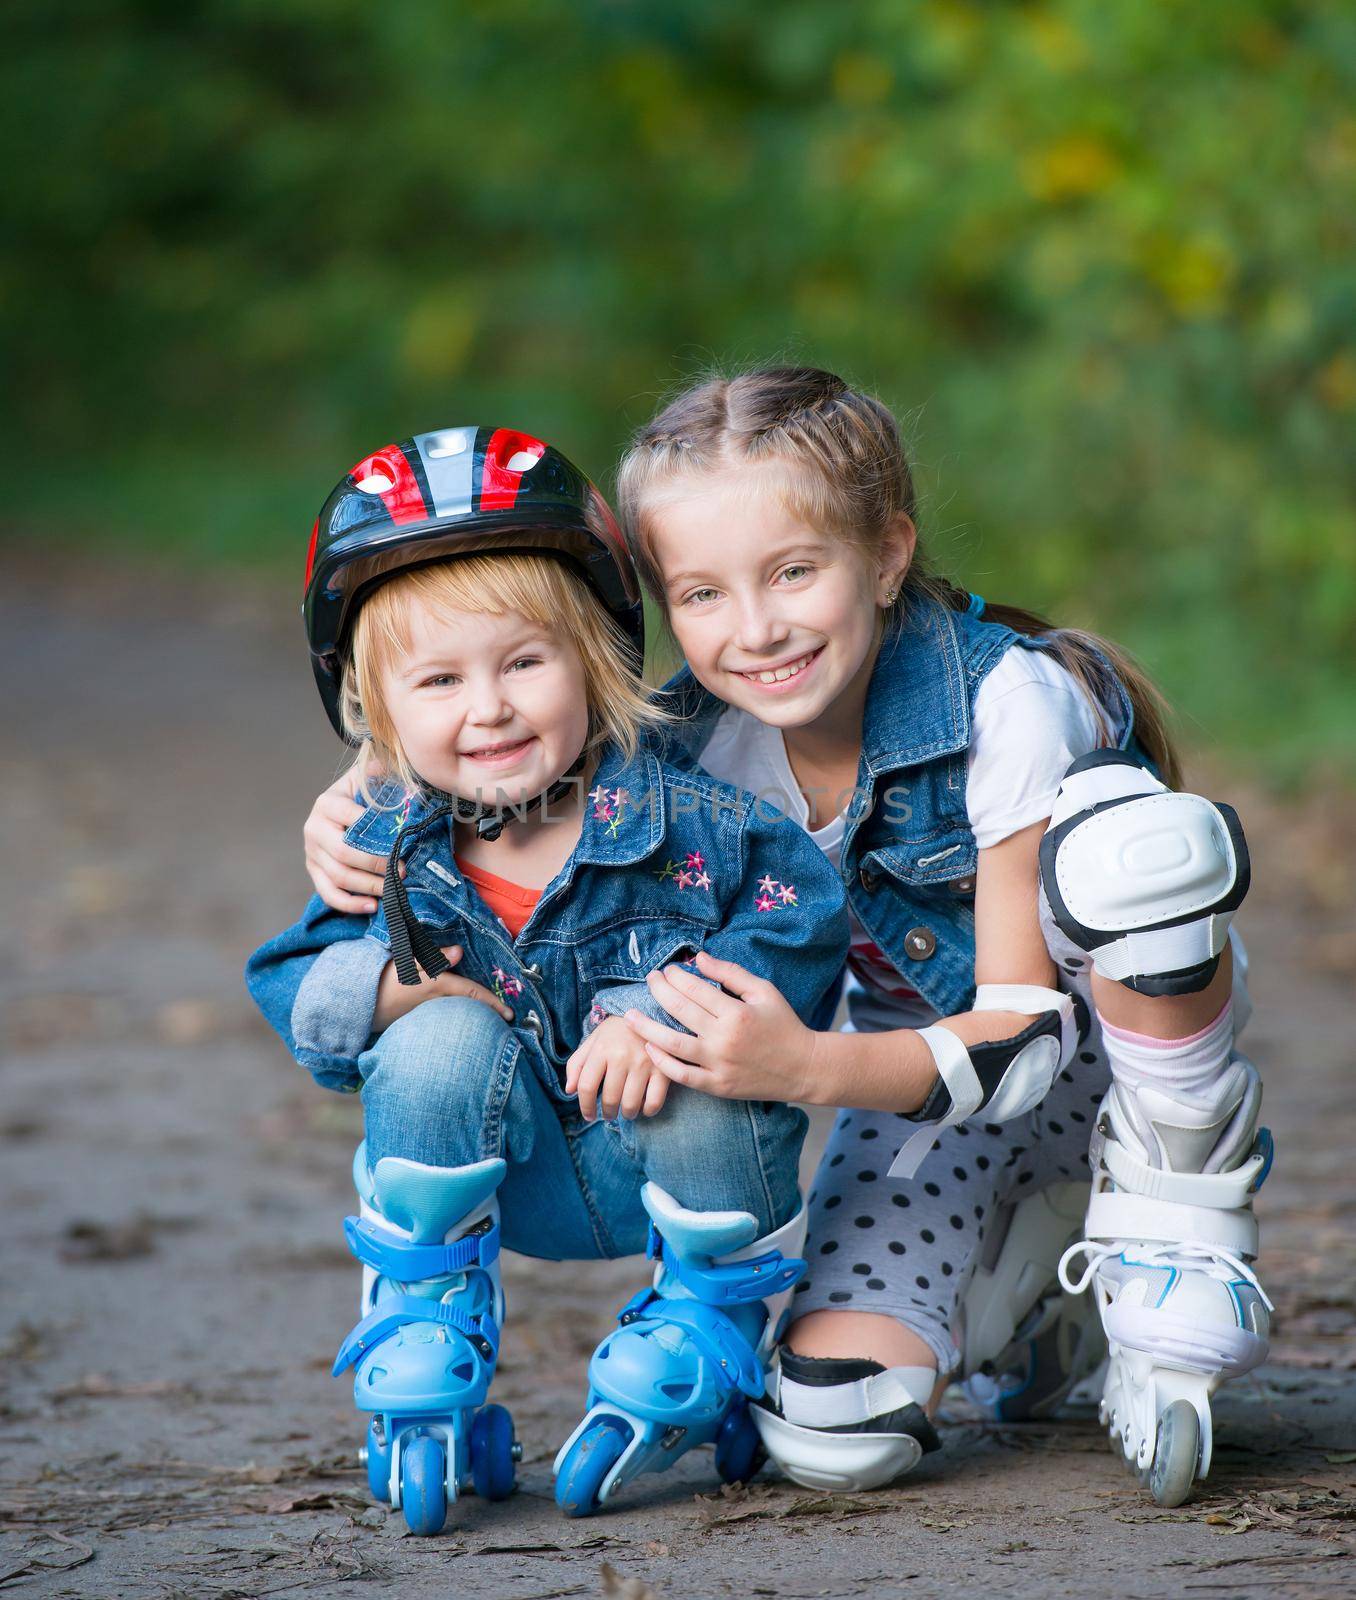 Two little girls on rollers by GekaSkr